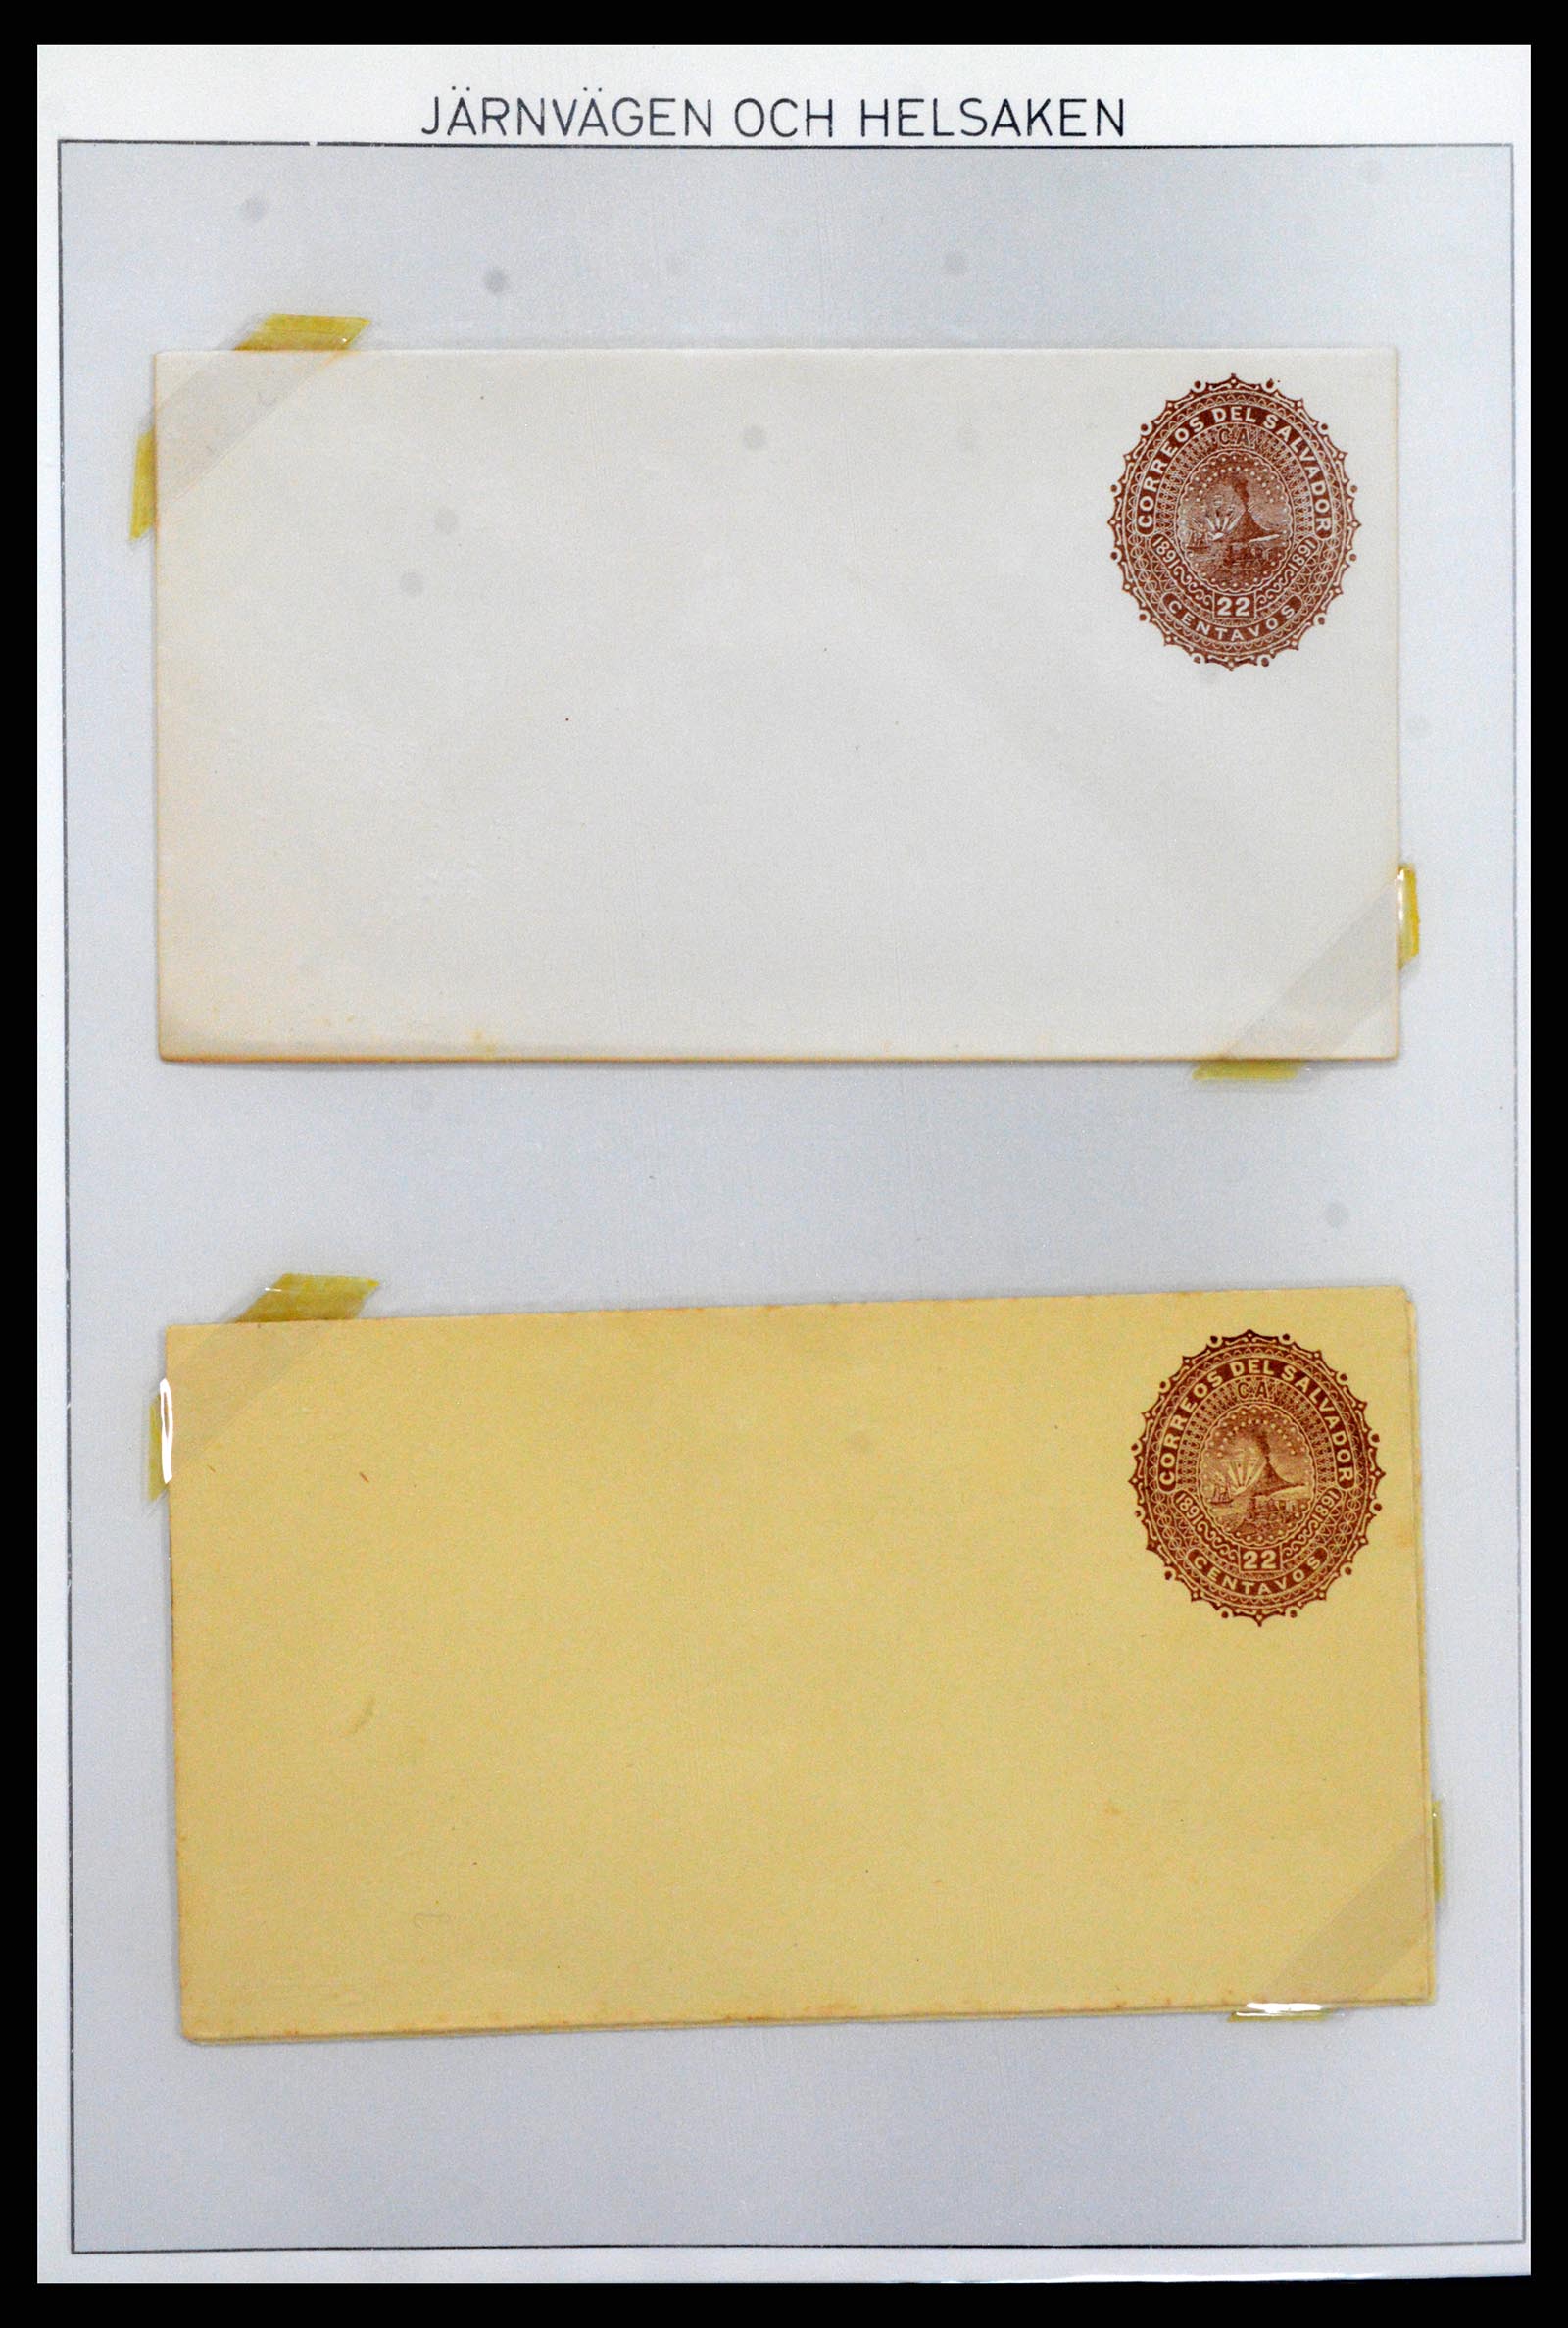 37412 017 - Stamp collection 37412 El Salvador trains 1891-1930.